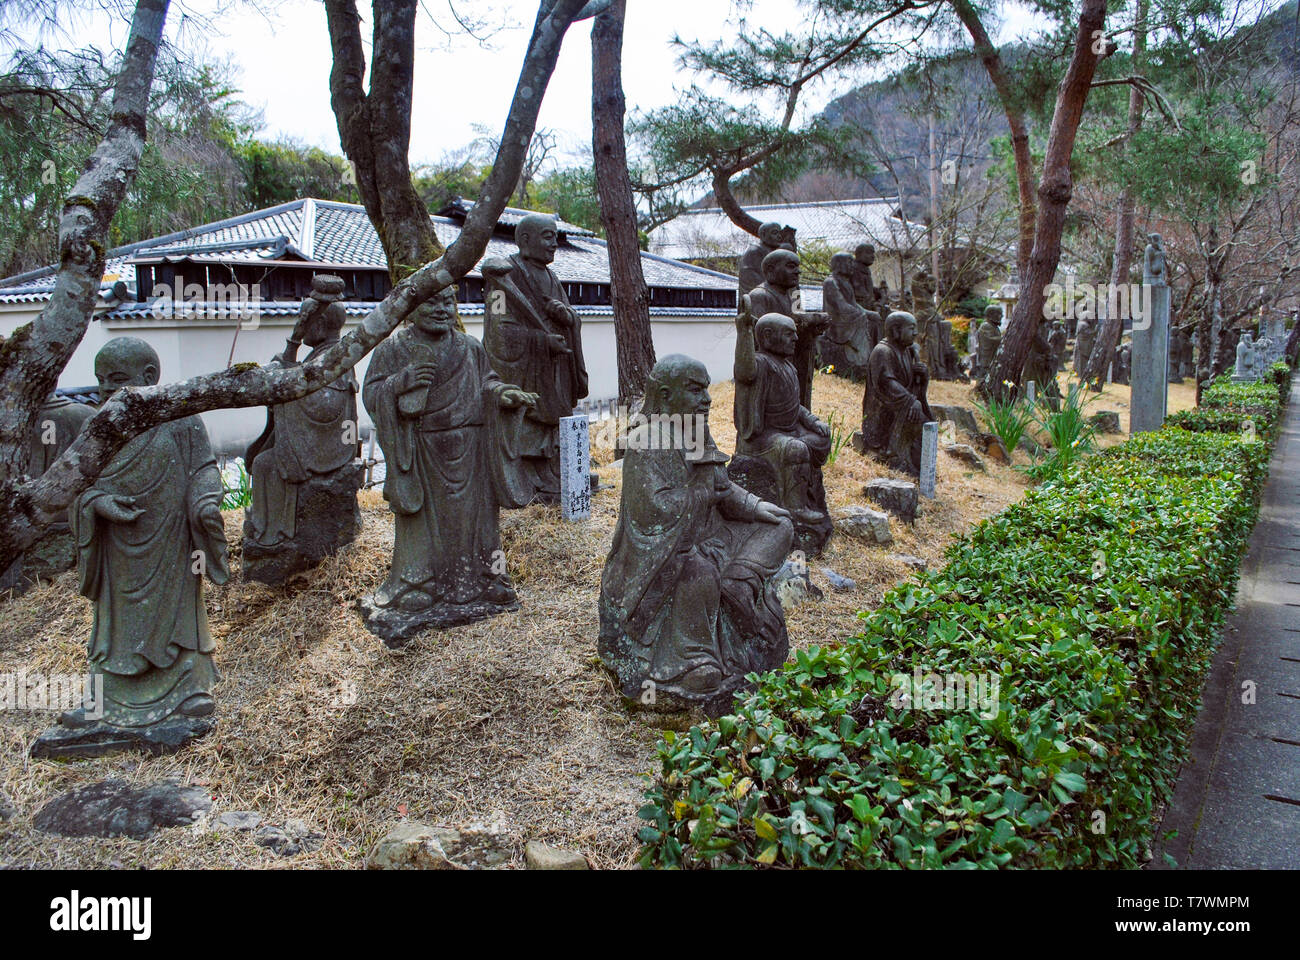 Diese Anordnung von Statuen sind bekannt als die Arashiyama Rakans, ein RAKAN ist ein vollständig erleuchteten Buddhistischen Salbei. Hogon-in Tempel, ein subtemple der Rin Stockfoto